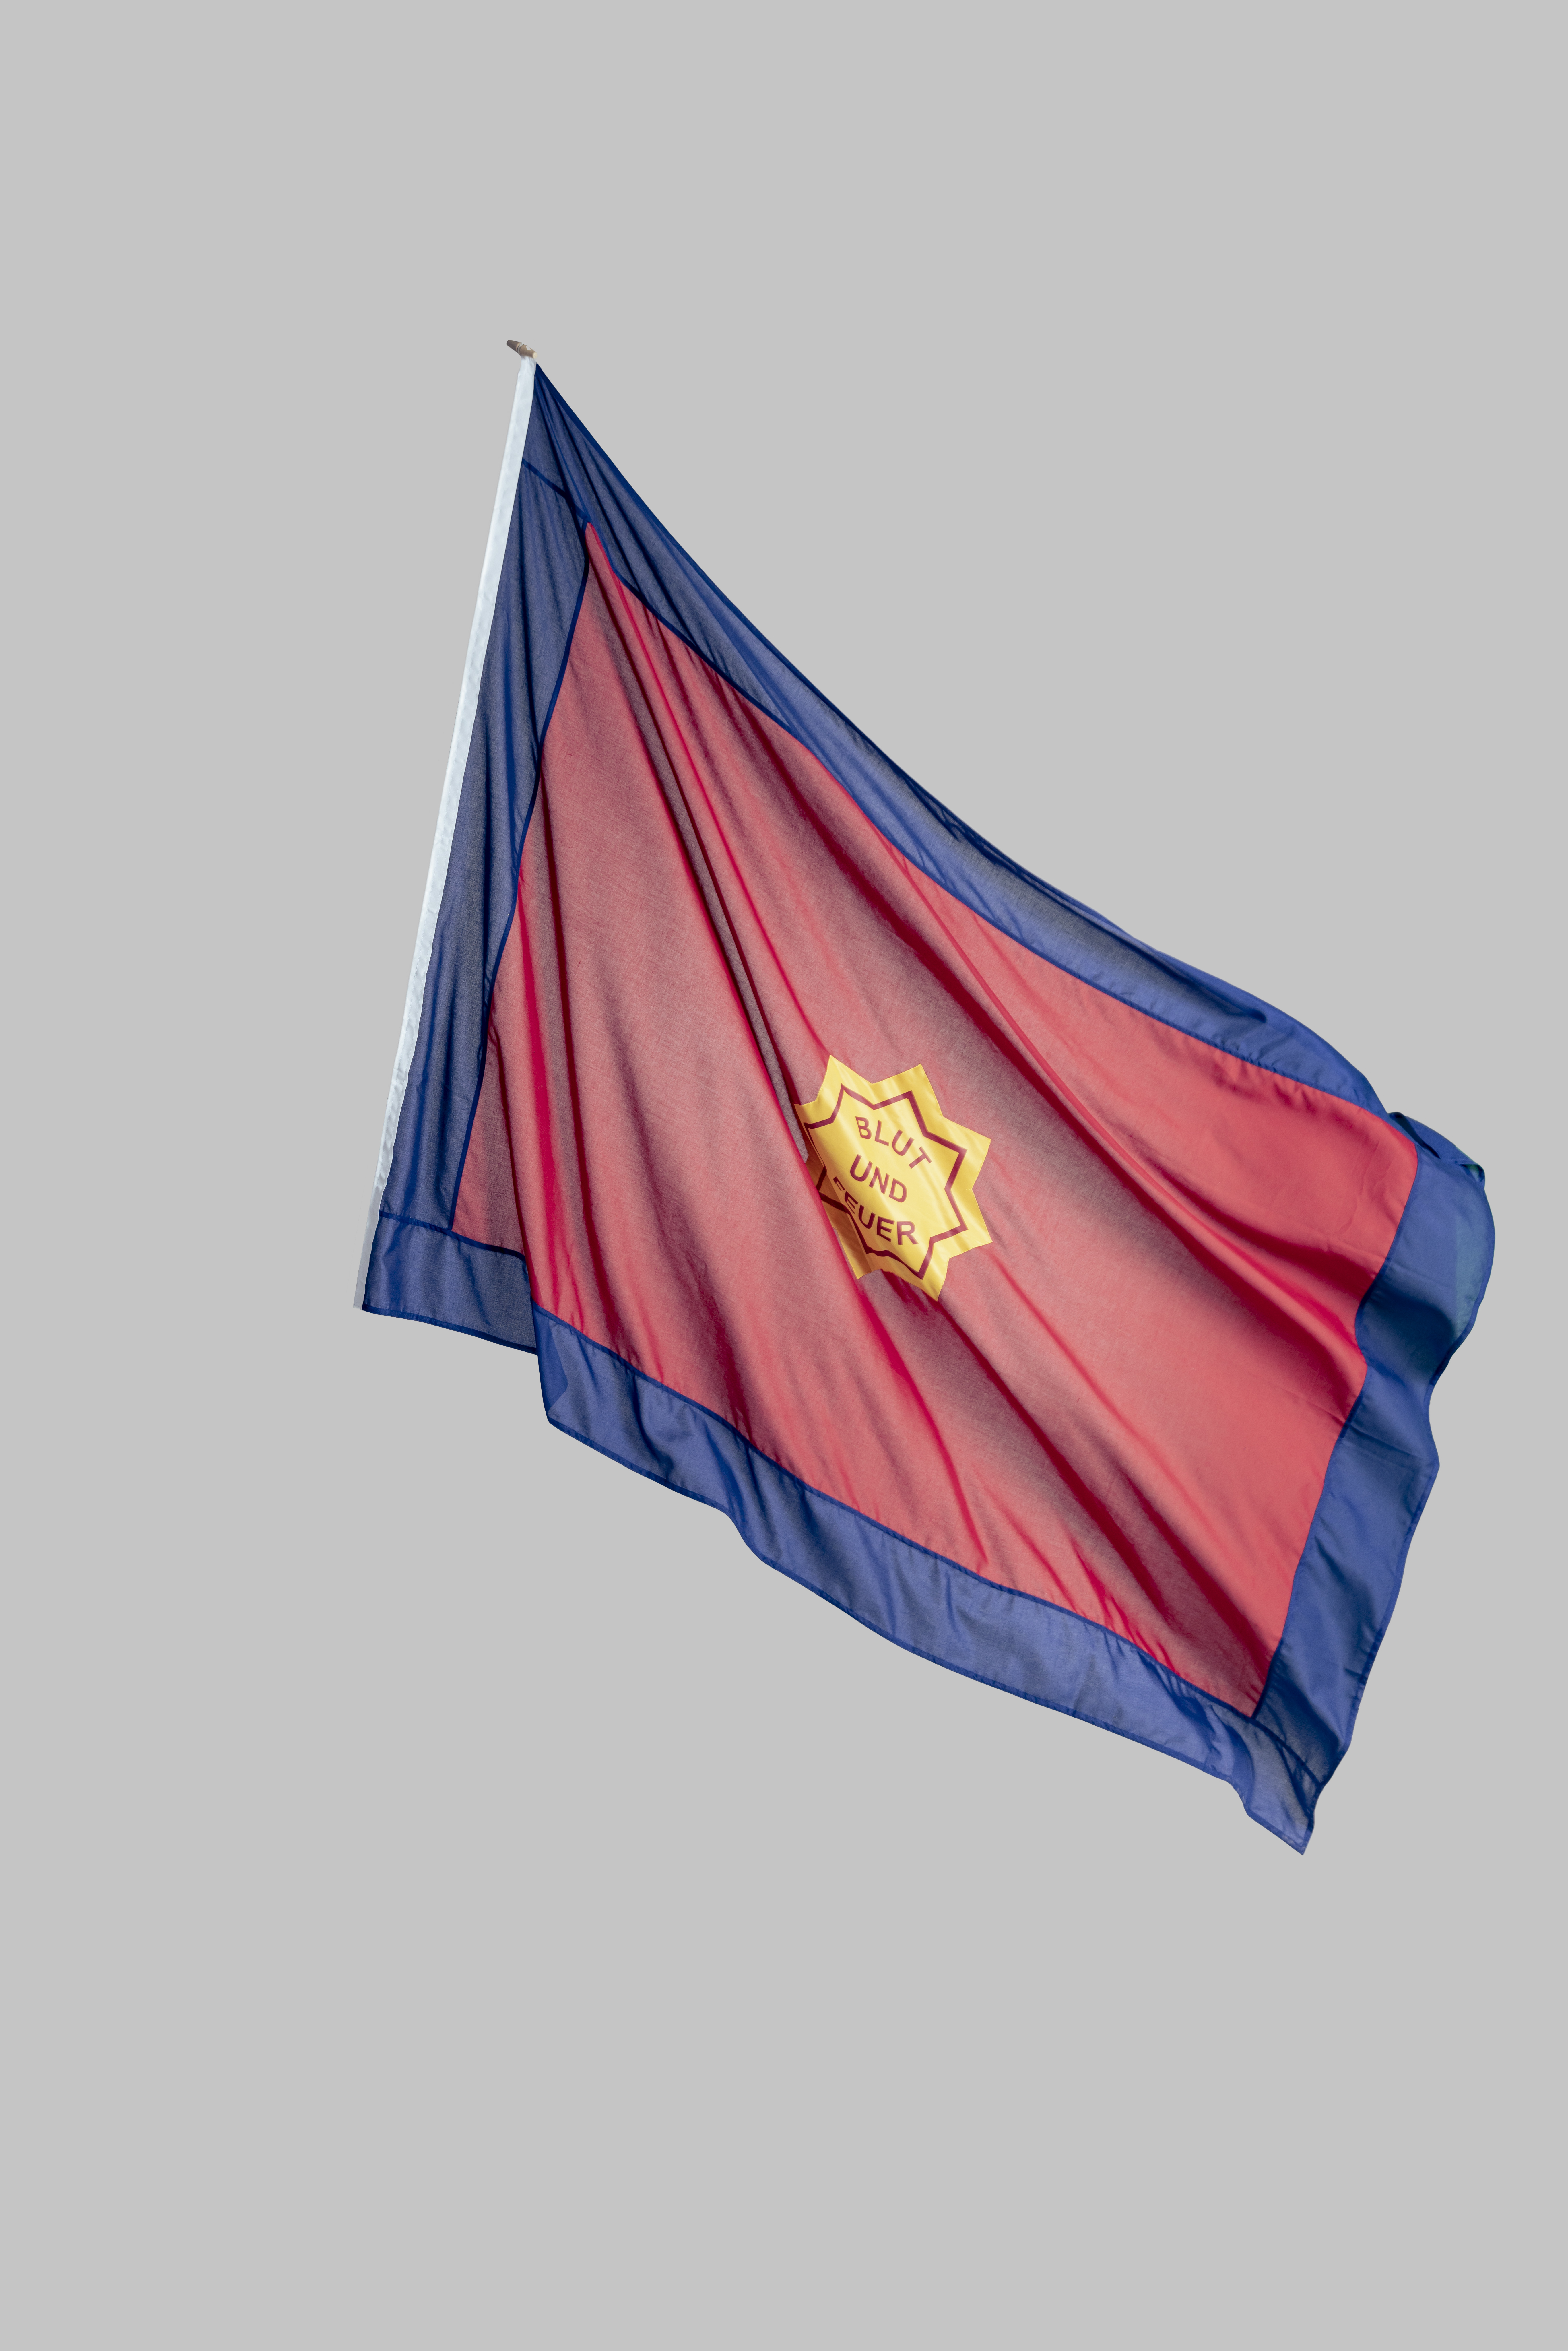 Fahne Heilsarmee (Englische Herstellung) für Mast